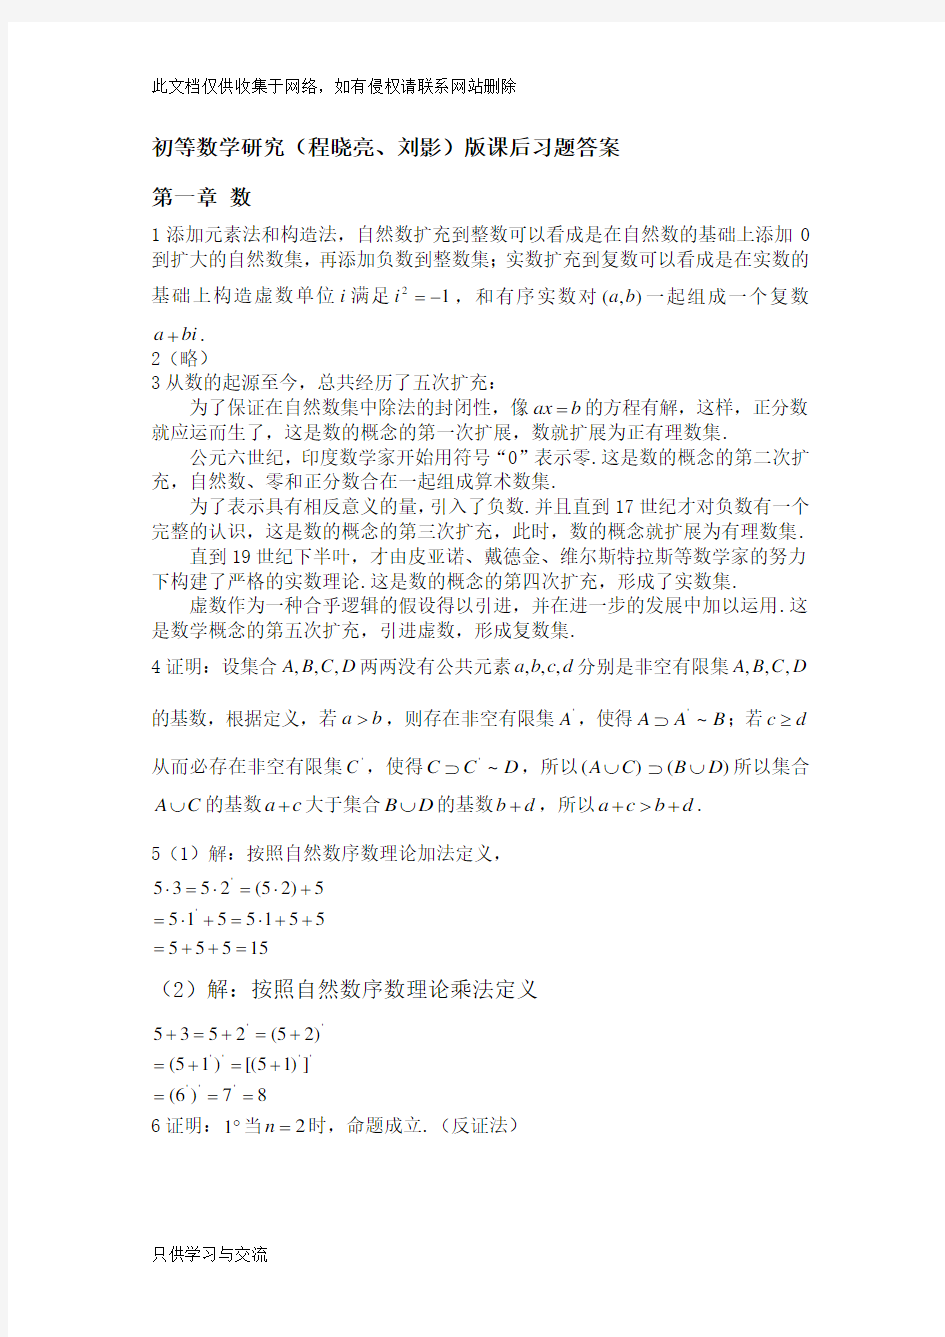 初等数学研究(程晓亮、刘影)版课后习题答案教程文件